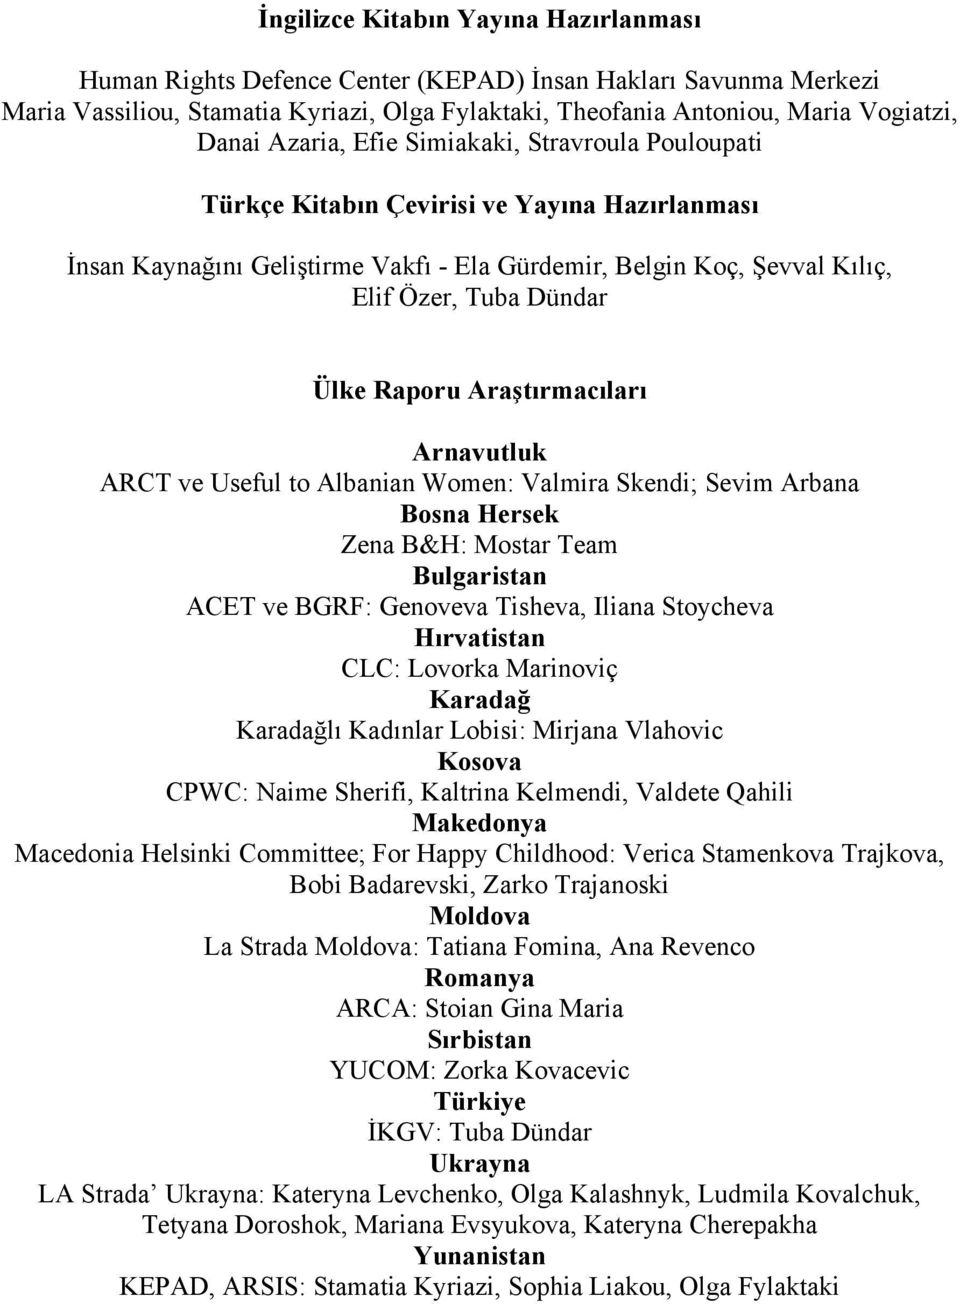 Raporu Araştırmacıları Arnavutluk ARCT ve Useful to Albanian Women: Valmira Skendi; Sevim Arbana Bosna Hersek Zena B&H: Mostar Team Bulgaristan ACET ve BGRF: Genoveva Tisheva, Iliana Stoycheva